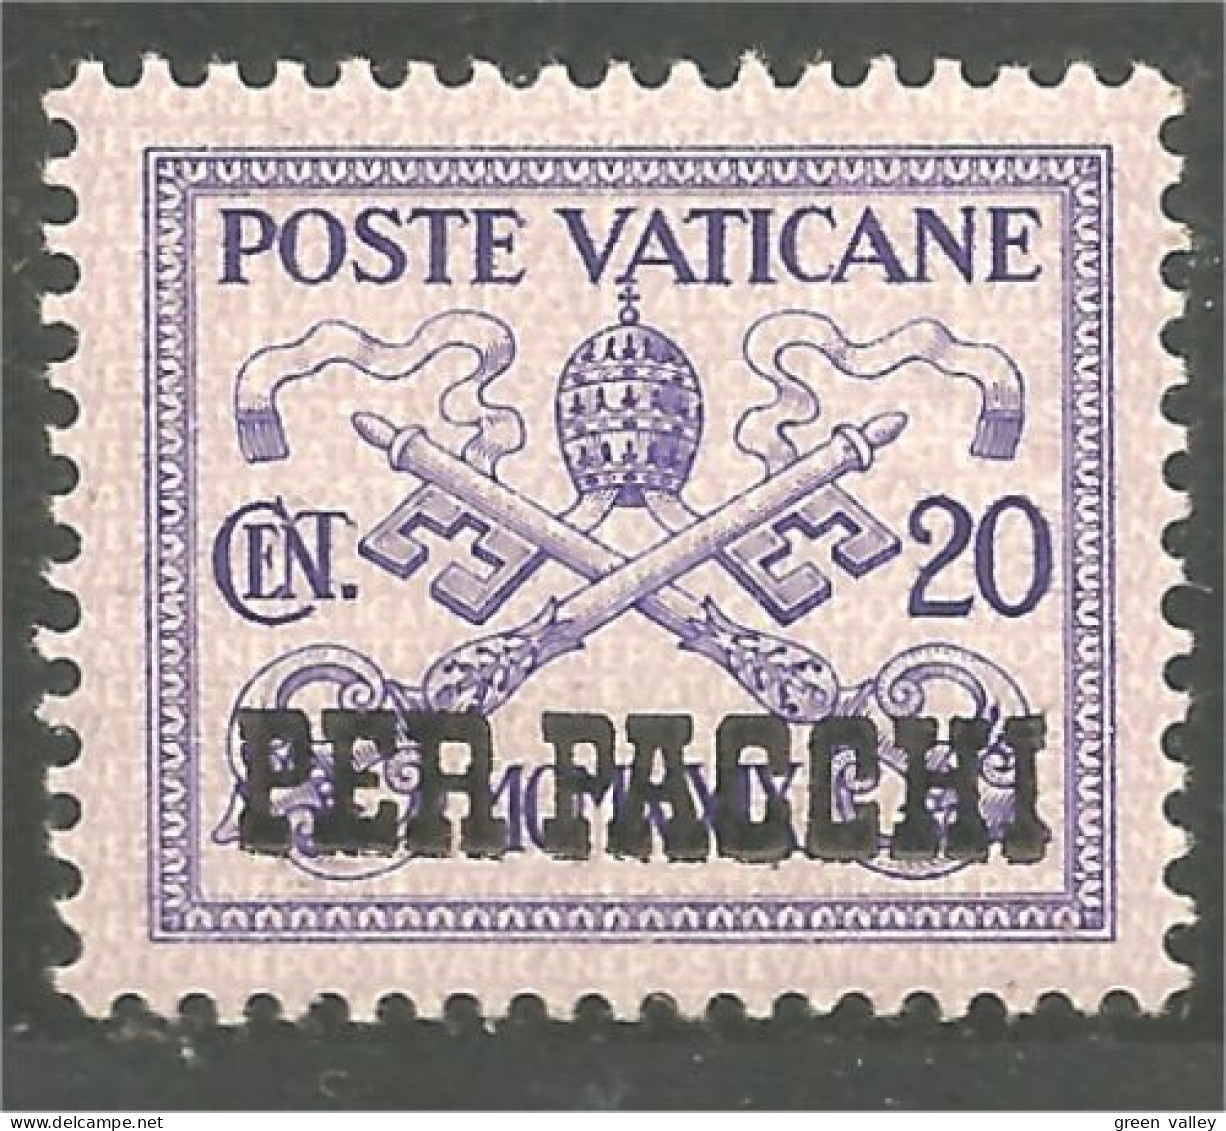 922 Vatican 20c Parcel Colis MH * Neuf CH (VAT-152) - Pacchi Postali